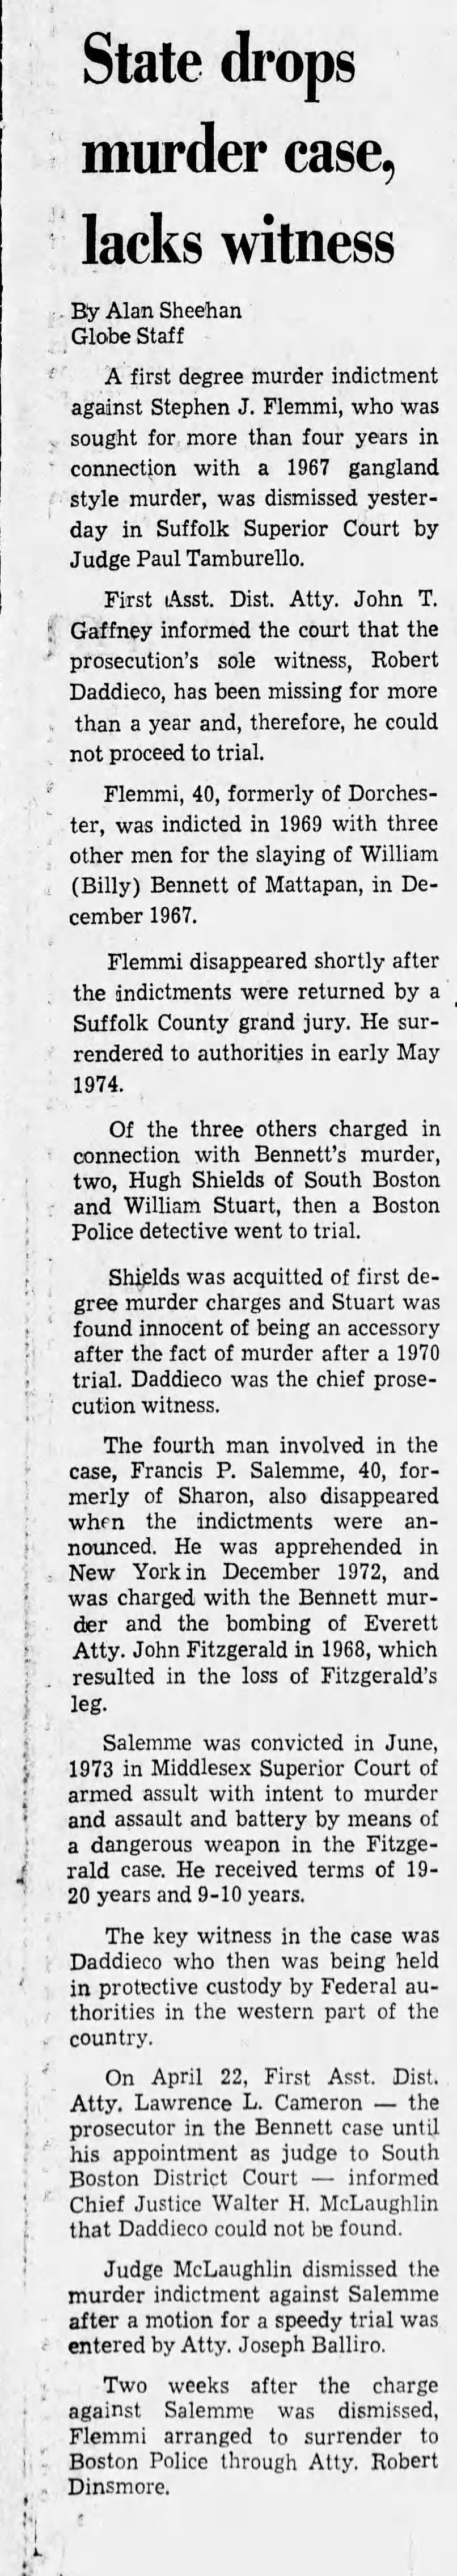 Bennett Murder Case Dropped (14 Nov 1974)